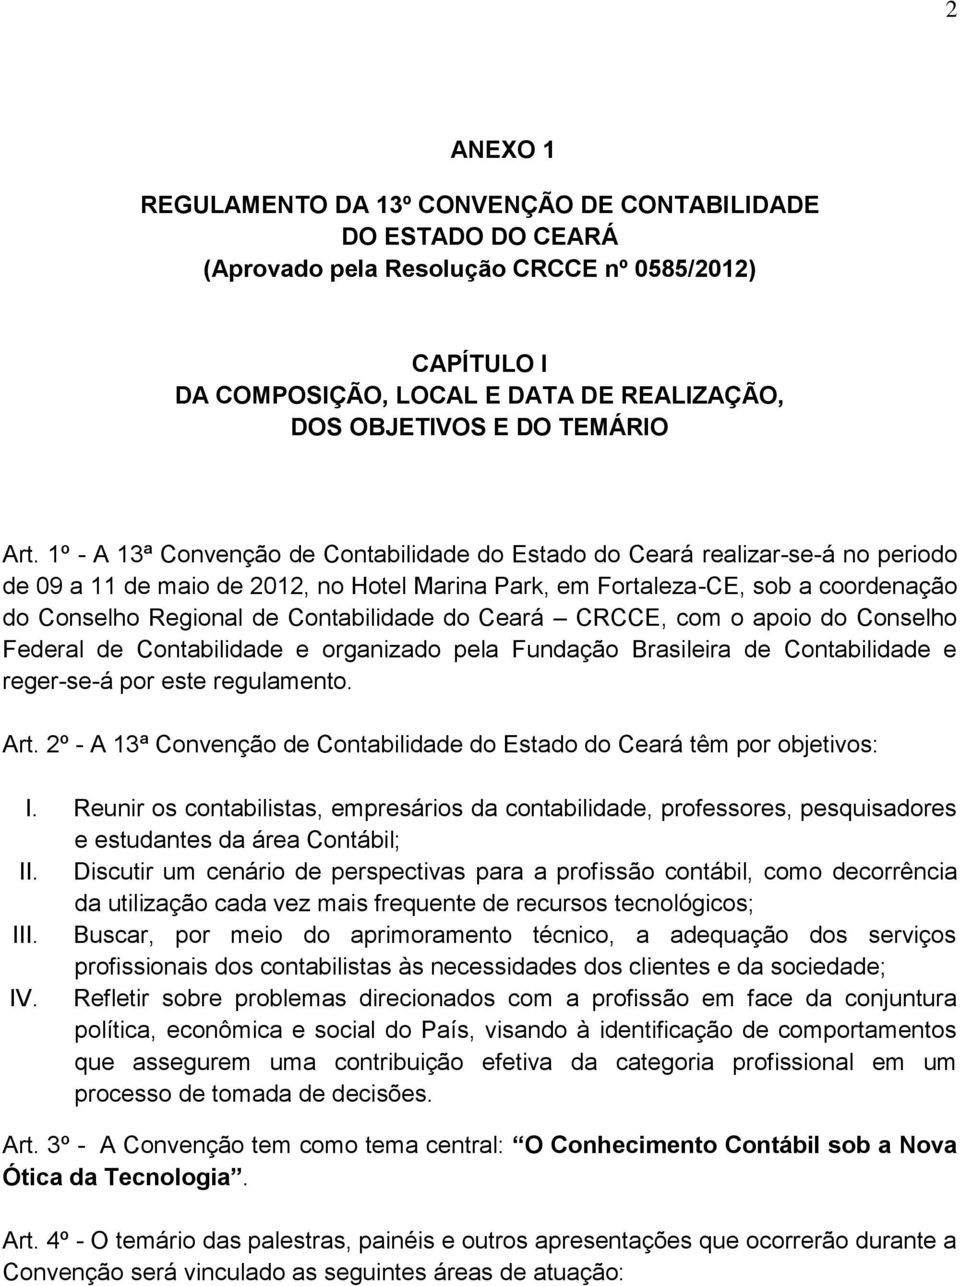 1º - A 13ª Convenção de Contabilidade do Estado do Ceará realizar-se-á no periodo de 09 a 11 de maio de 2012, no Hotel Marina Park, em Fortaleza-CE, sob a coordenação do Conselho Regional de